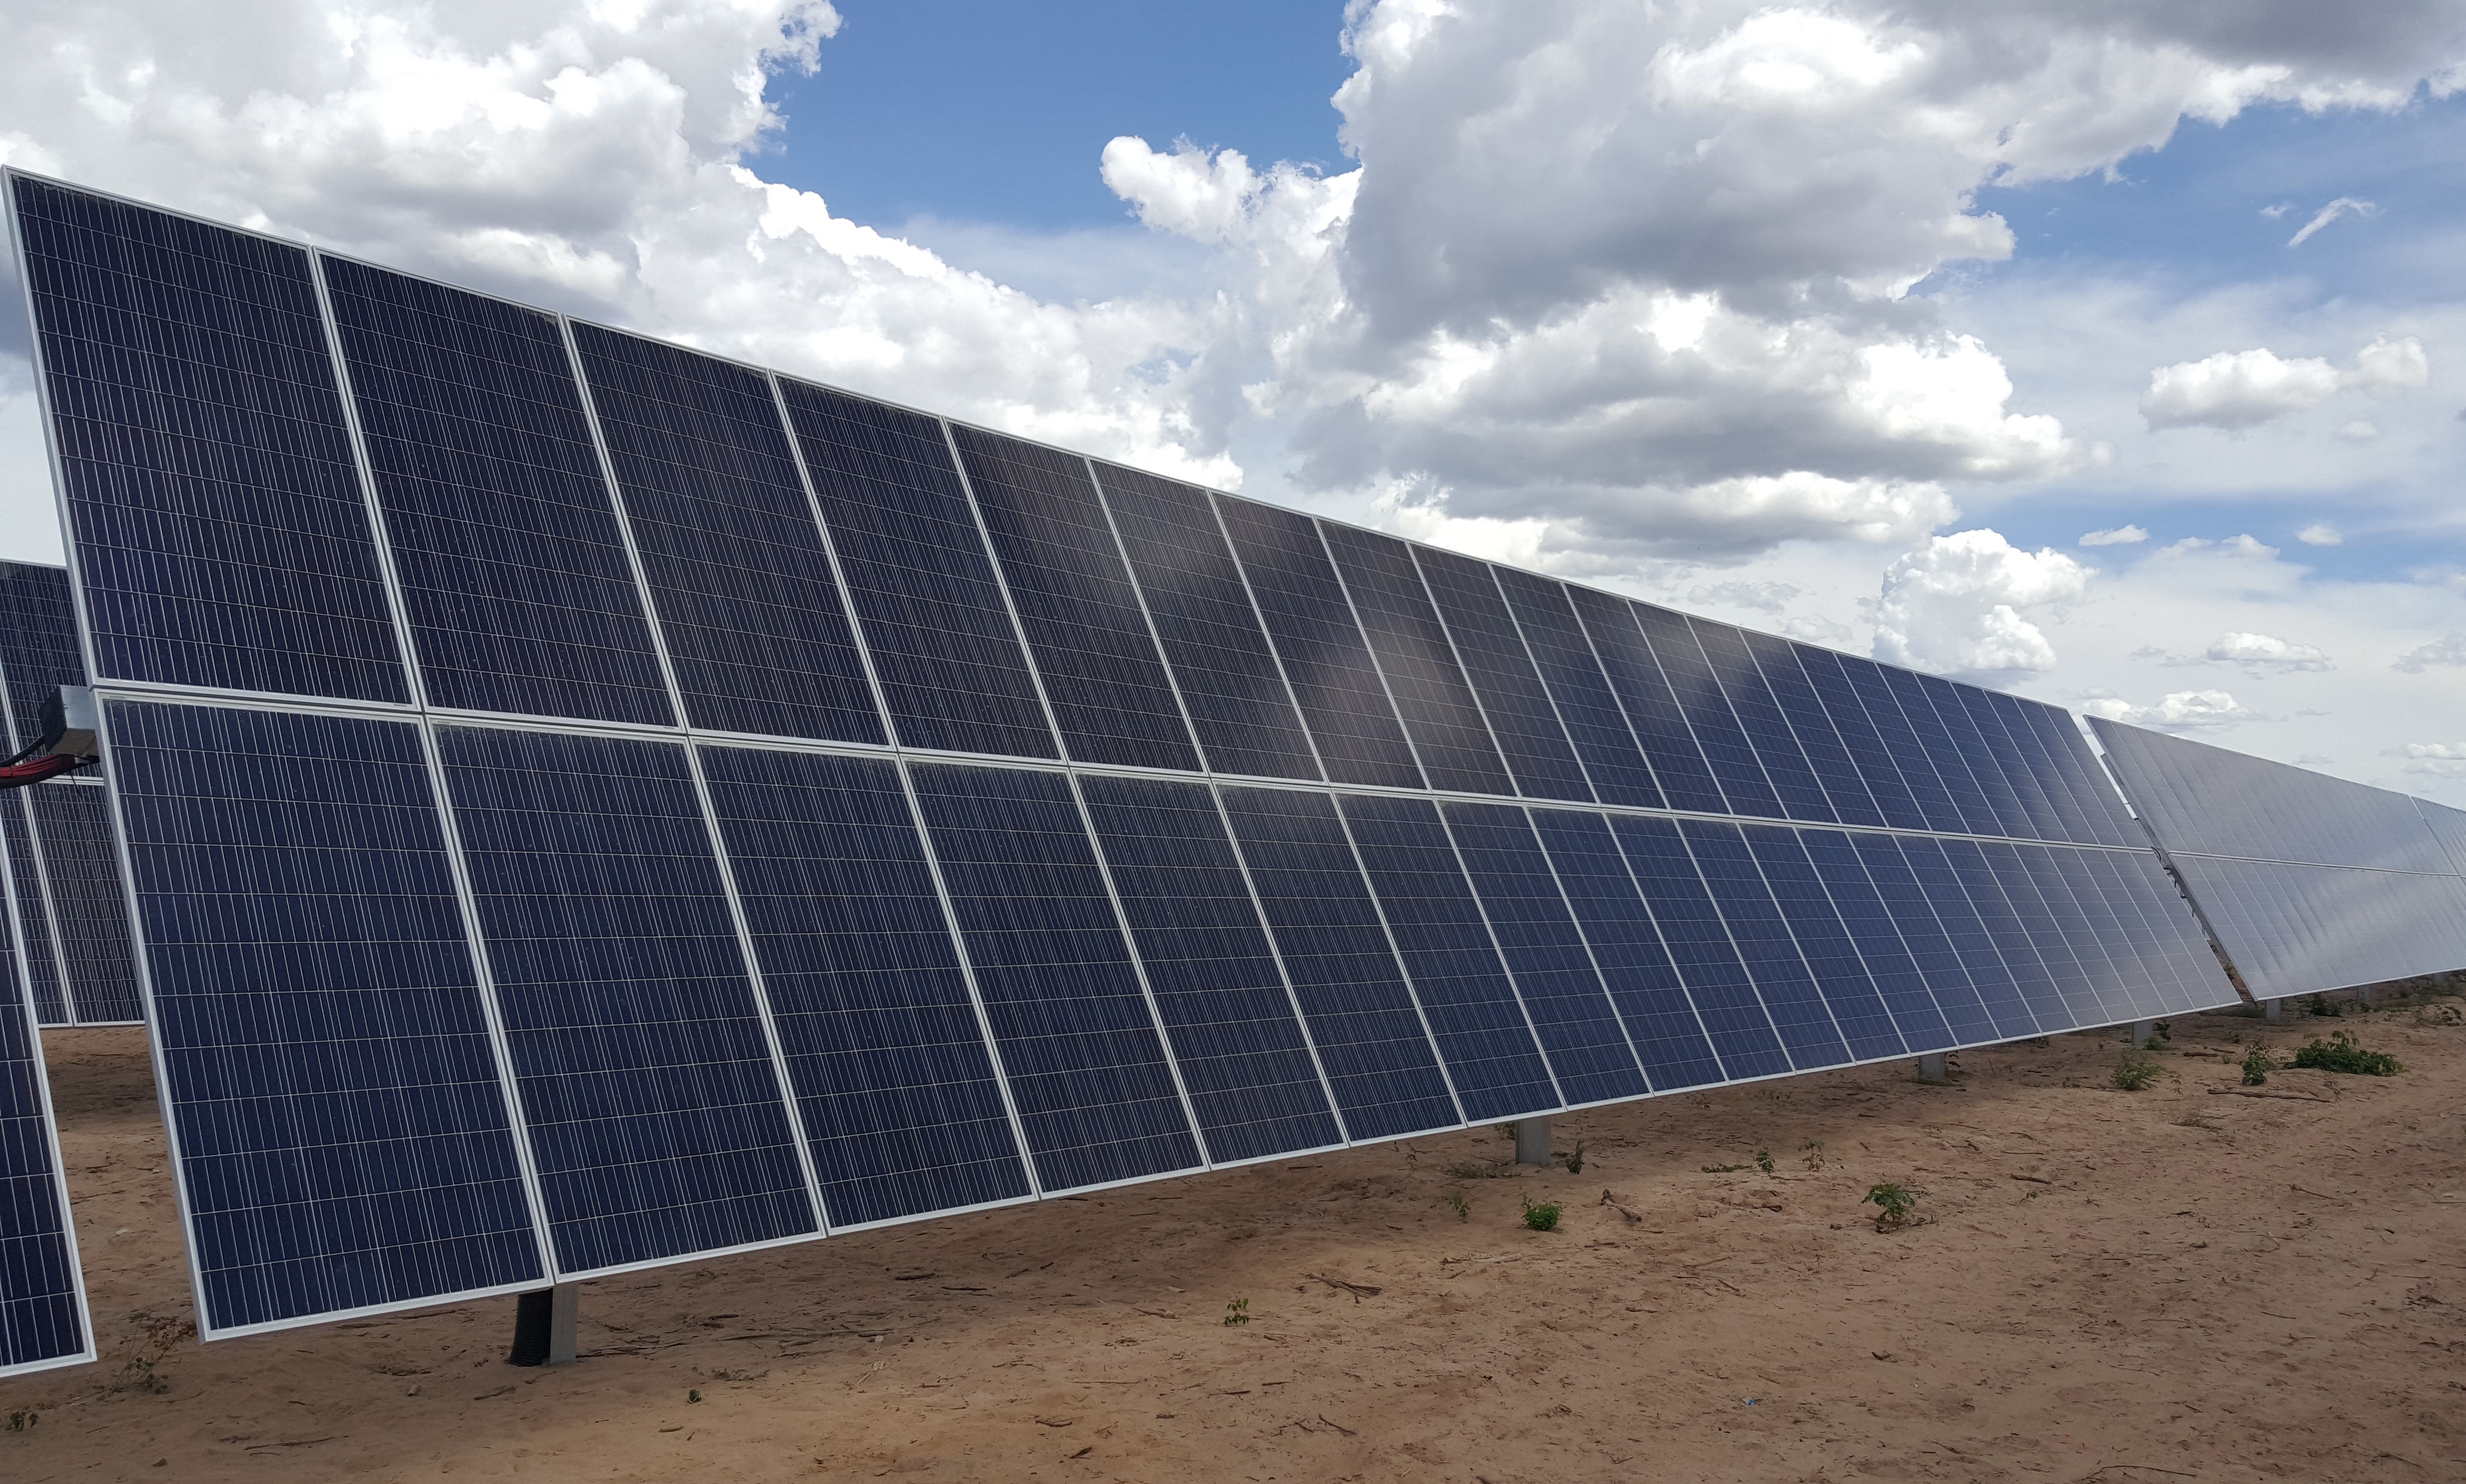 Soltec suministra 738 MW a través de su seguidor SFOne a dos proyectos solares en Brasil